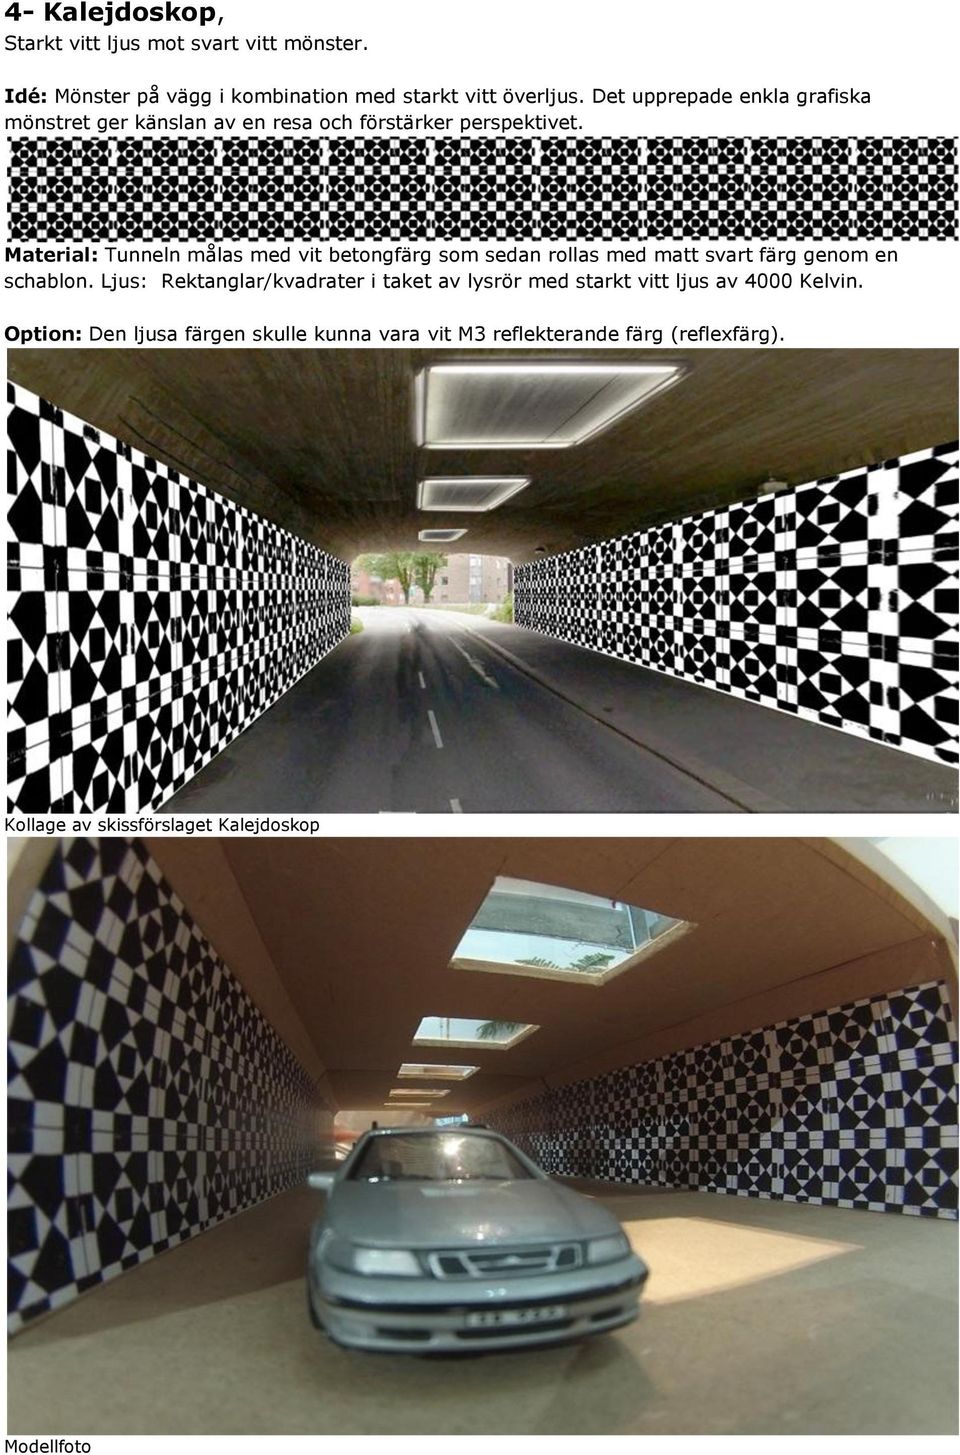 Material: Tunneln målas med vit betongfärg som sedan rollas med matt svart färg genom en schablon.